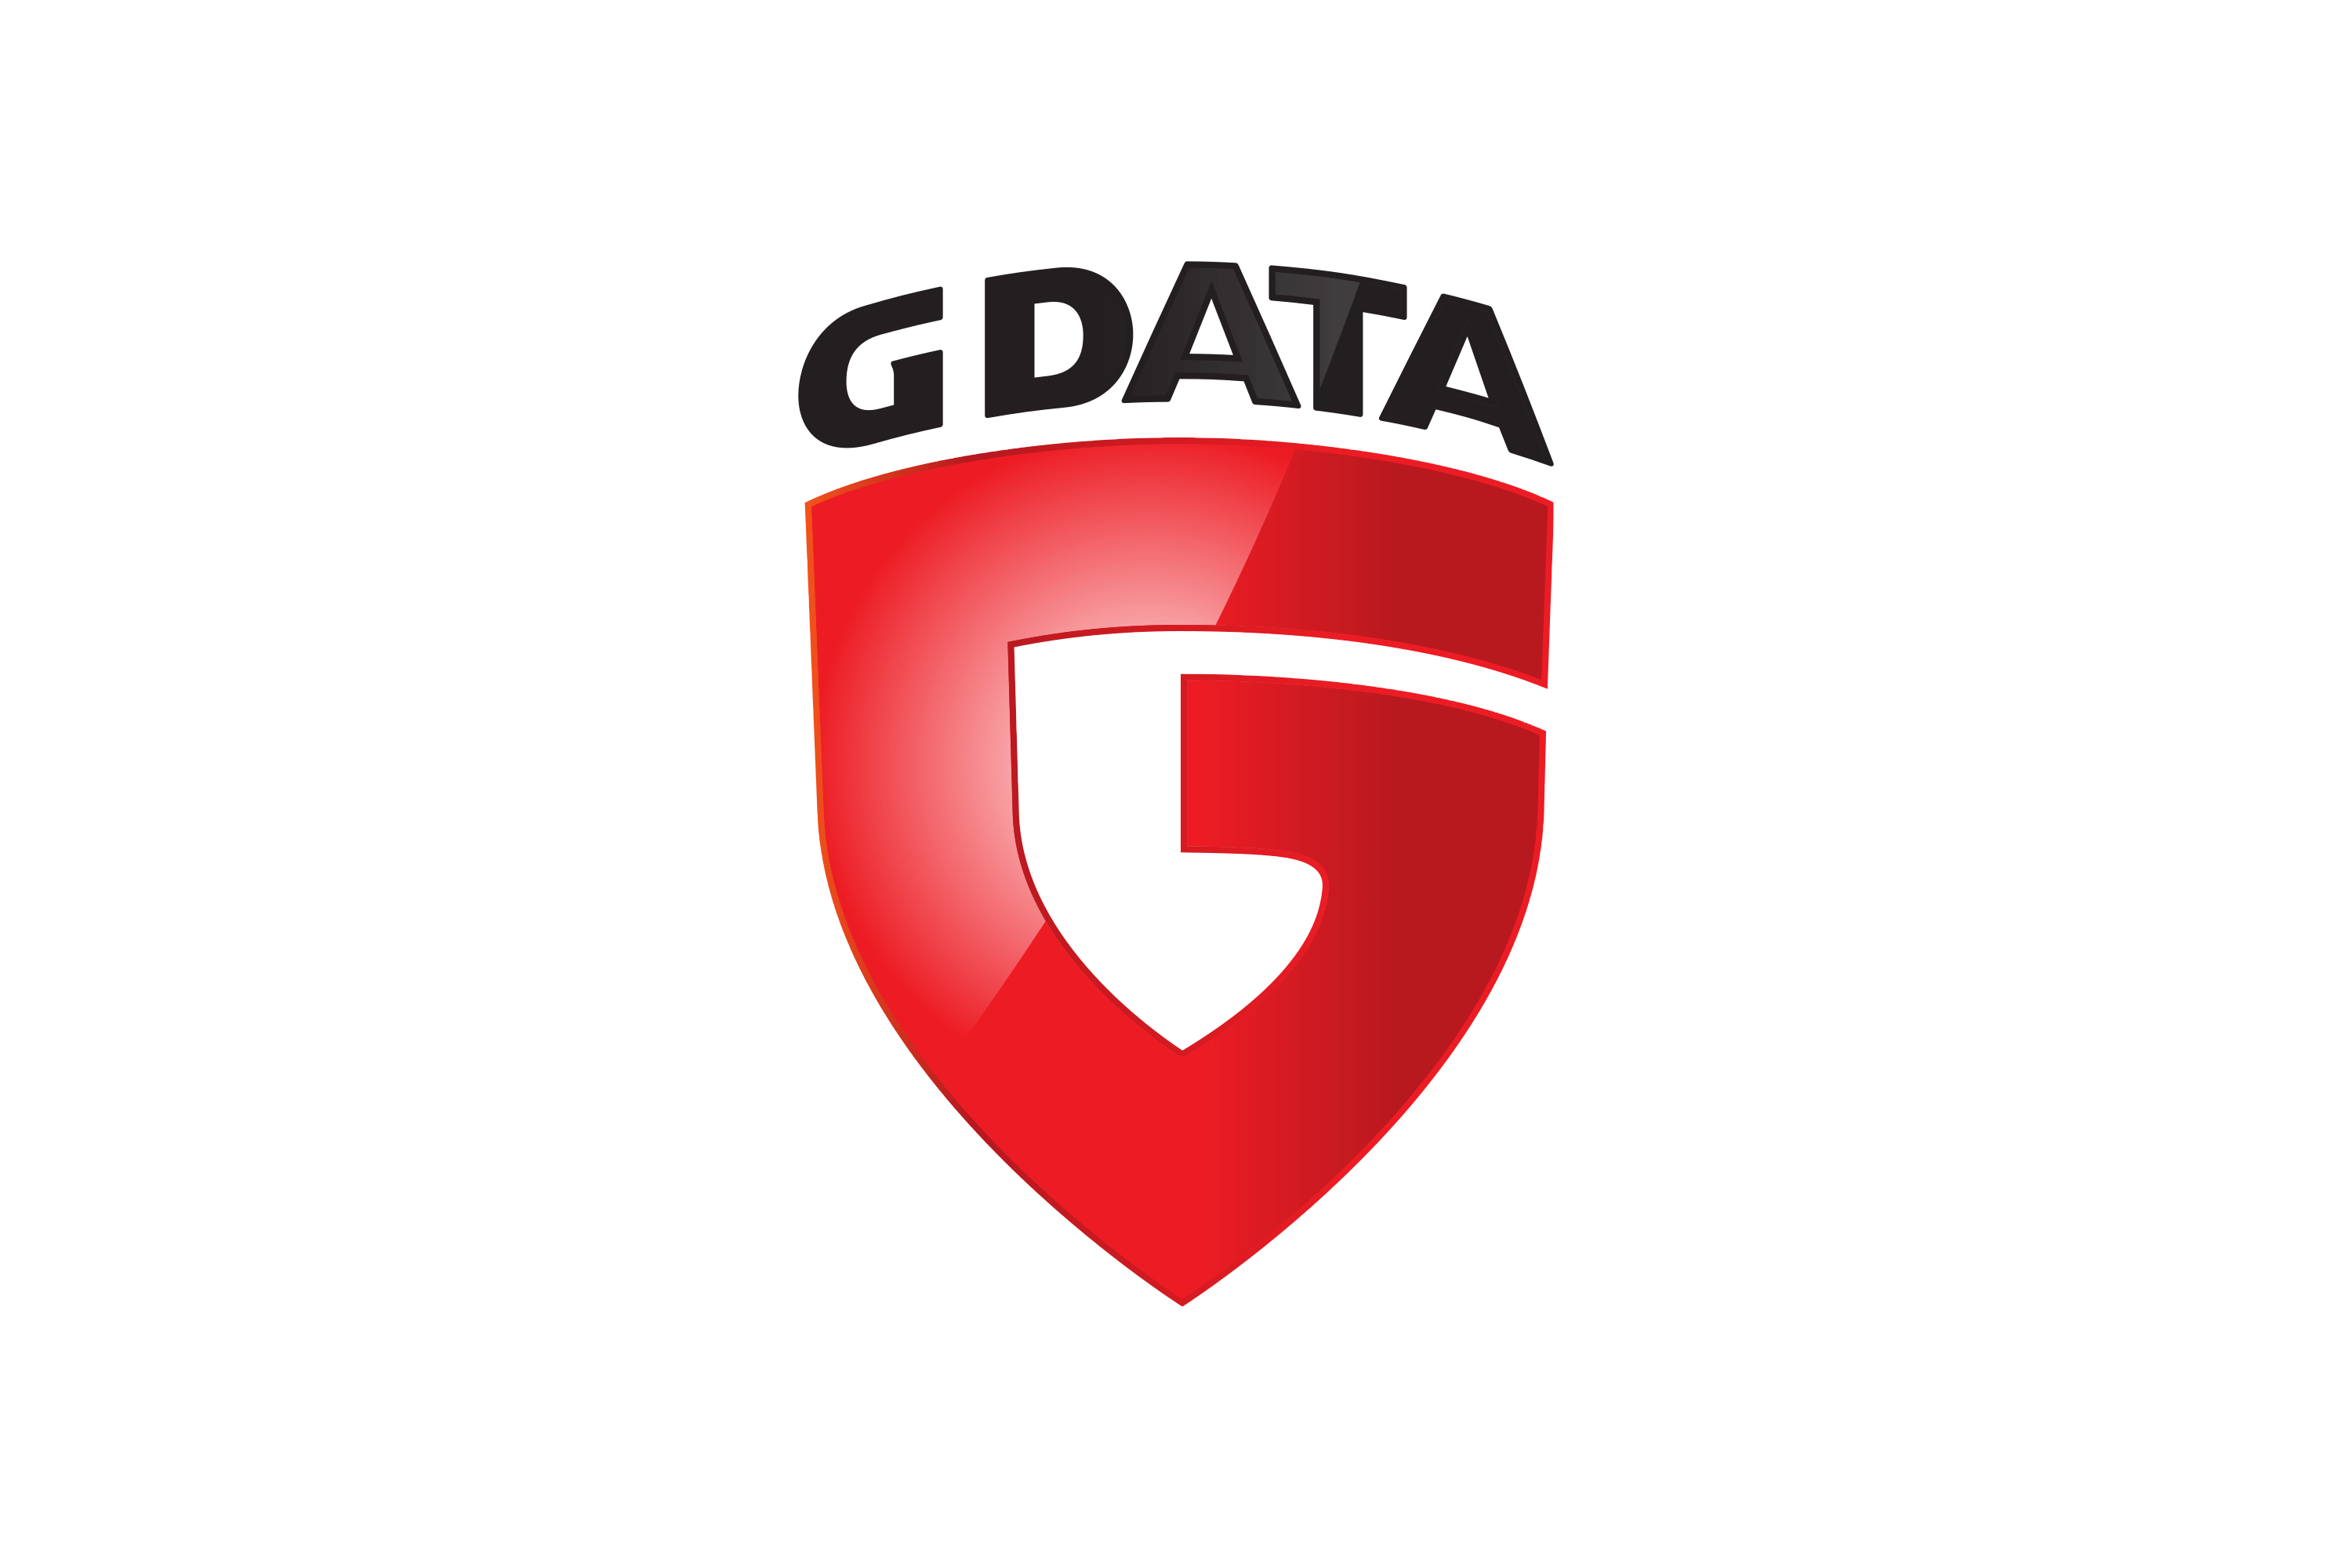 G DATA